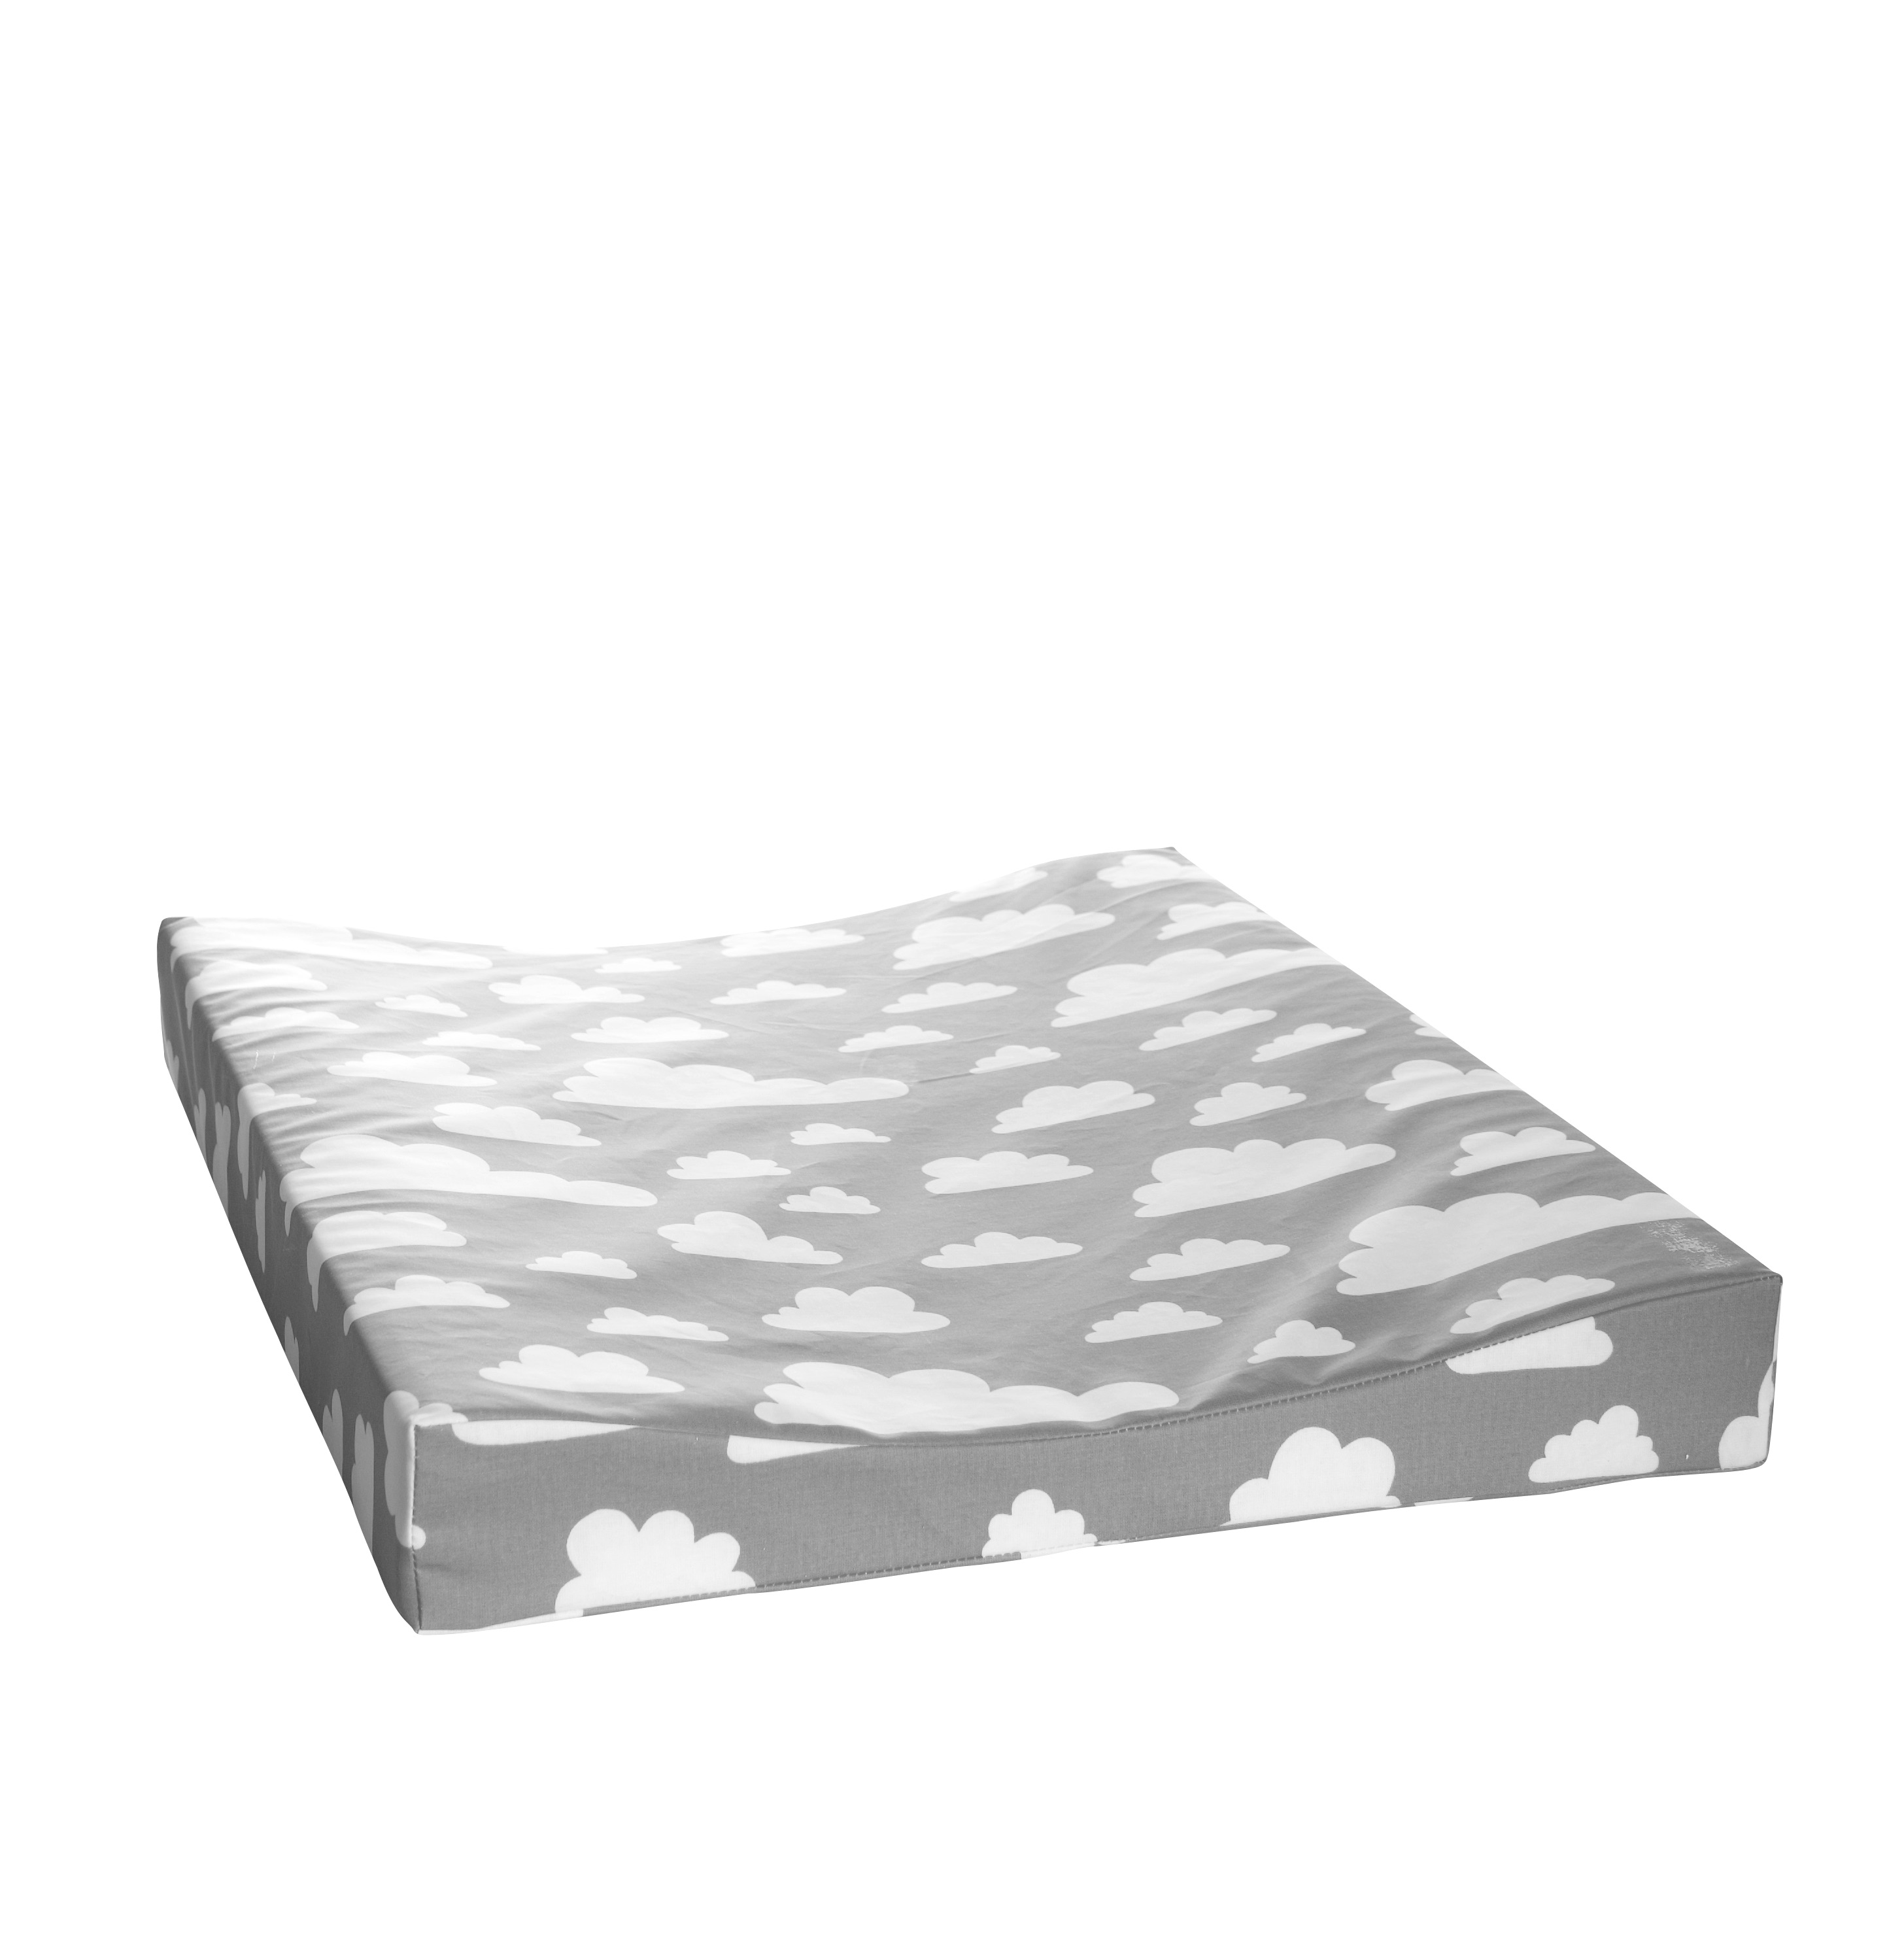 Szürke felhős pelenkázó matrac, Farg&Form